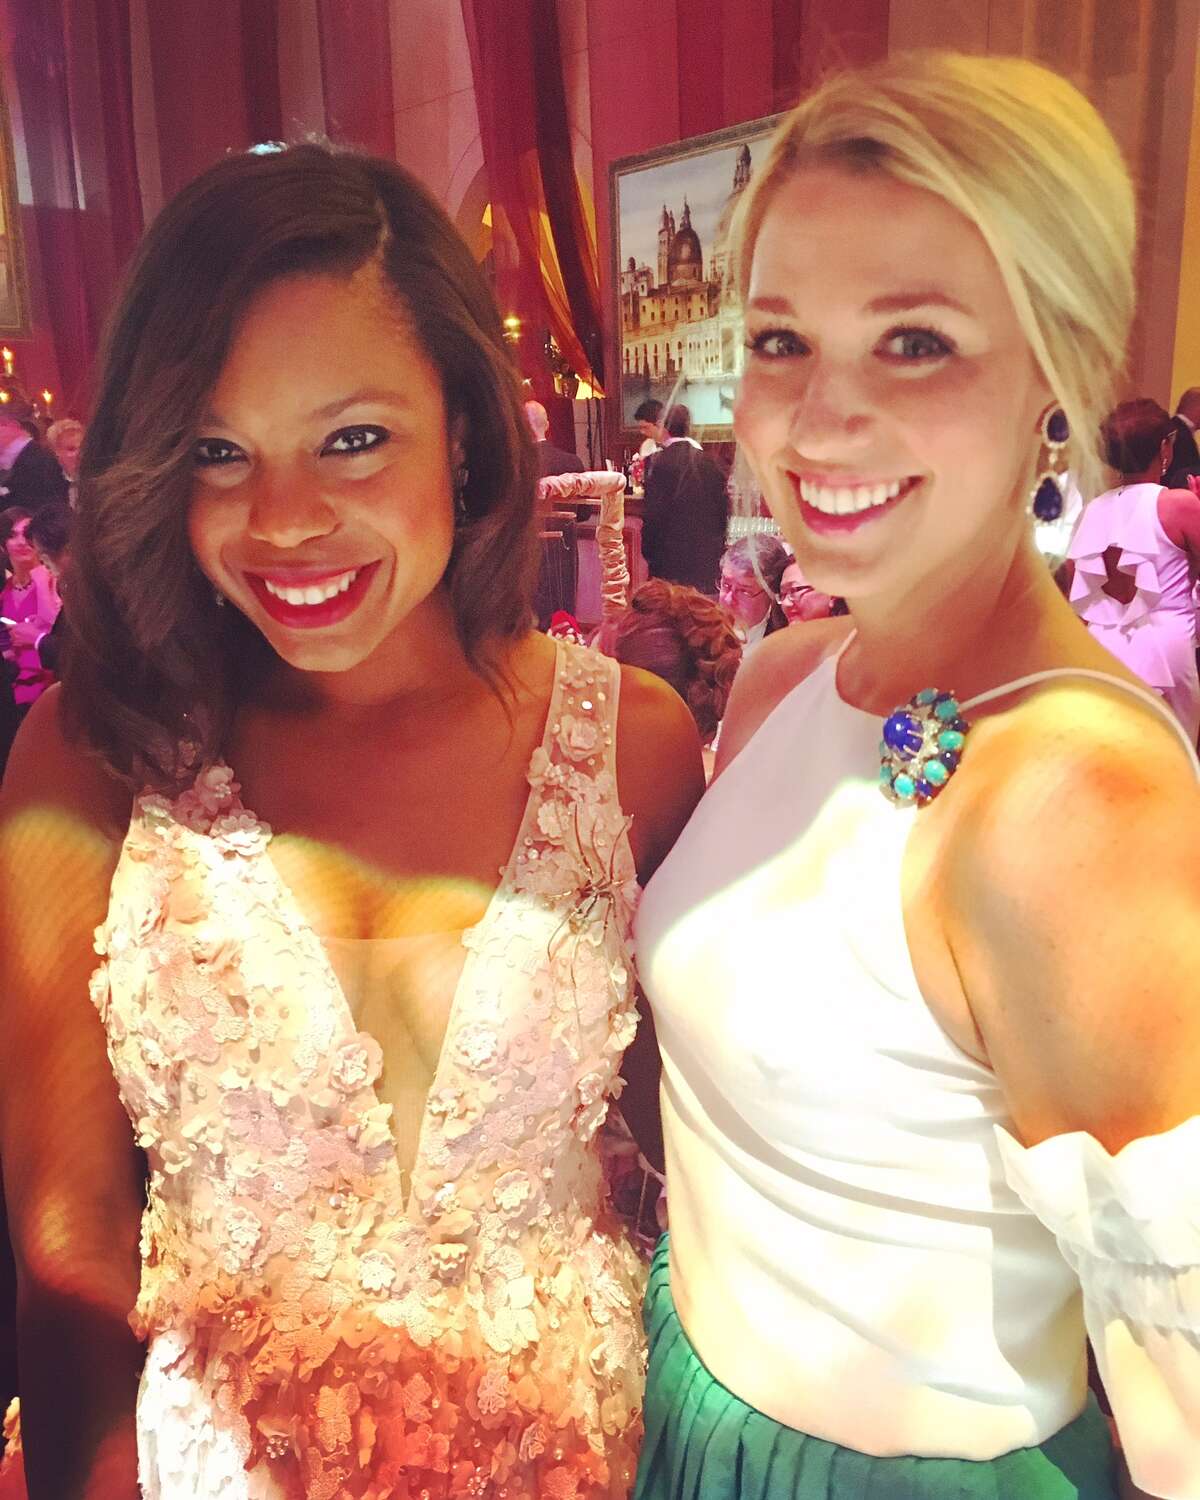 Amber Elliott and Christina Stith at Houston Grand Opera Ball 2017.